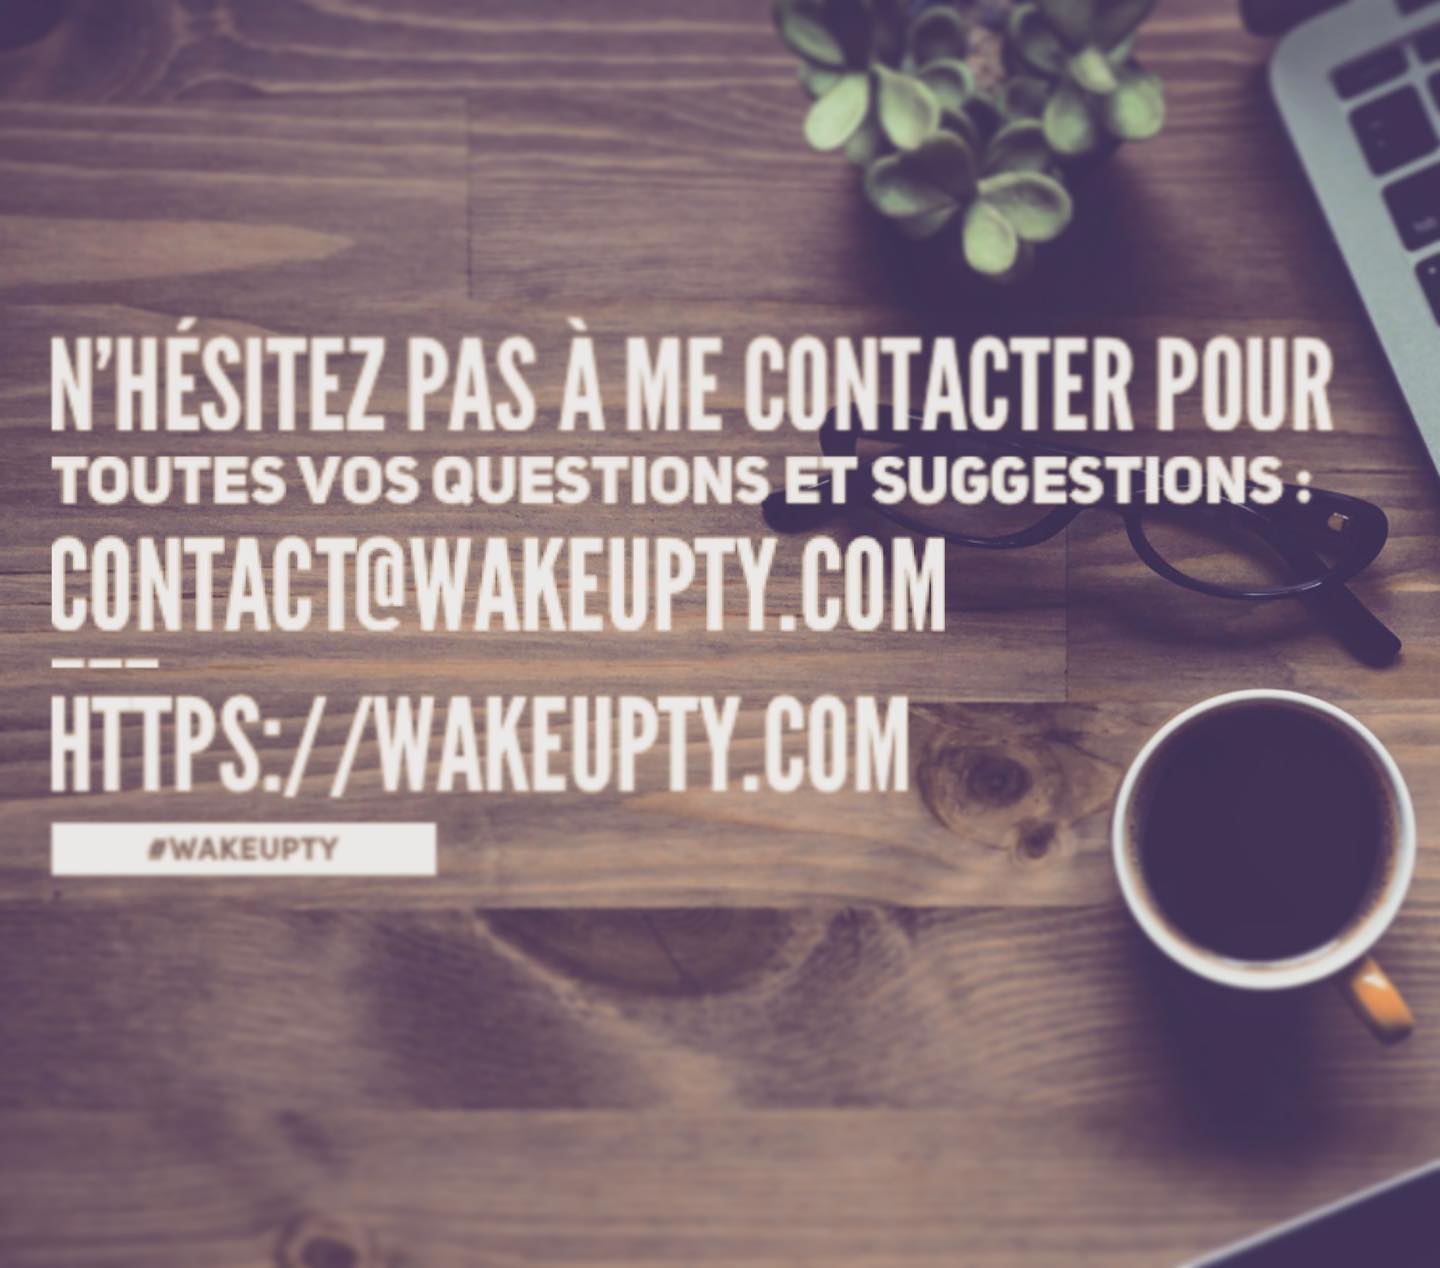 Entre Euphorie et Mélancolie ferme ses portes cette année et devient : WAKEUPTY. 
Rejoignez-moi sur @wakeupty_com pour la suite de l’actualité.
HTTPS://WAKEUPTY.COM

#followme #newwebsite #newinstagram #wakeupty #wakeupforanewlife